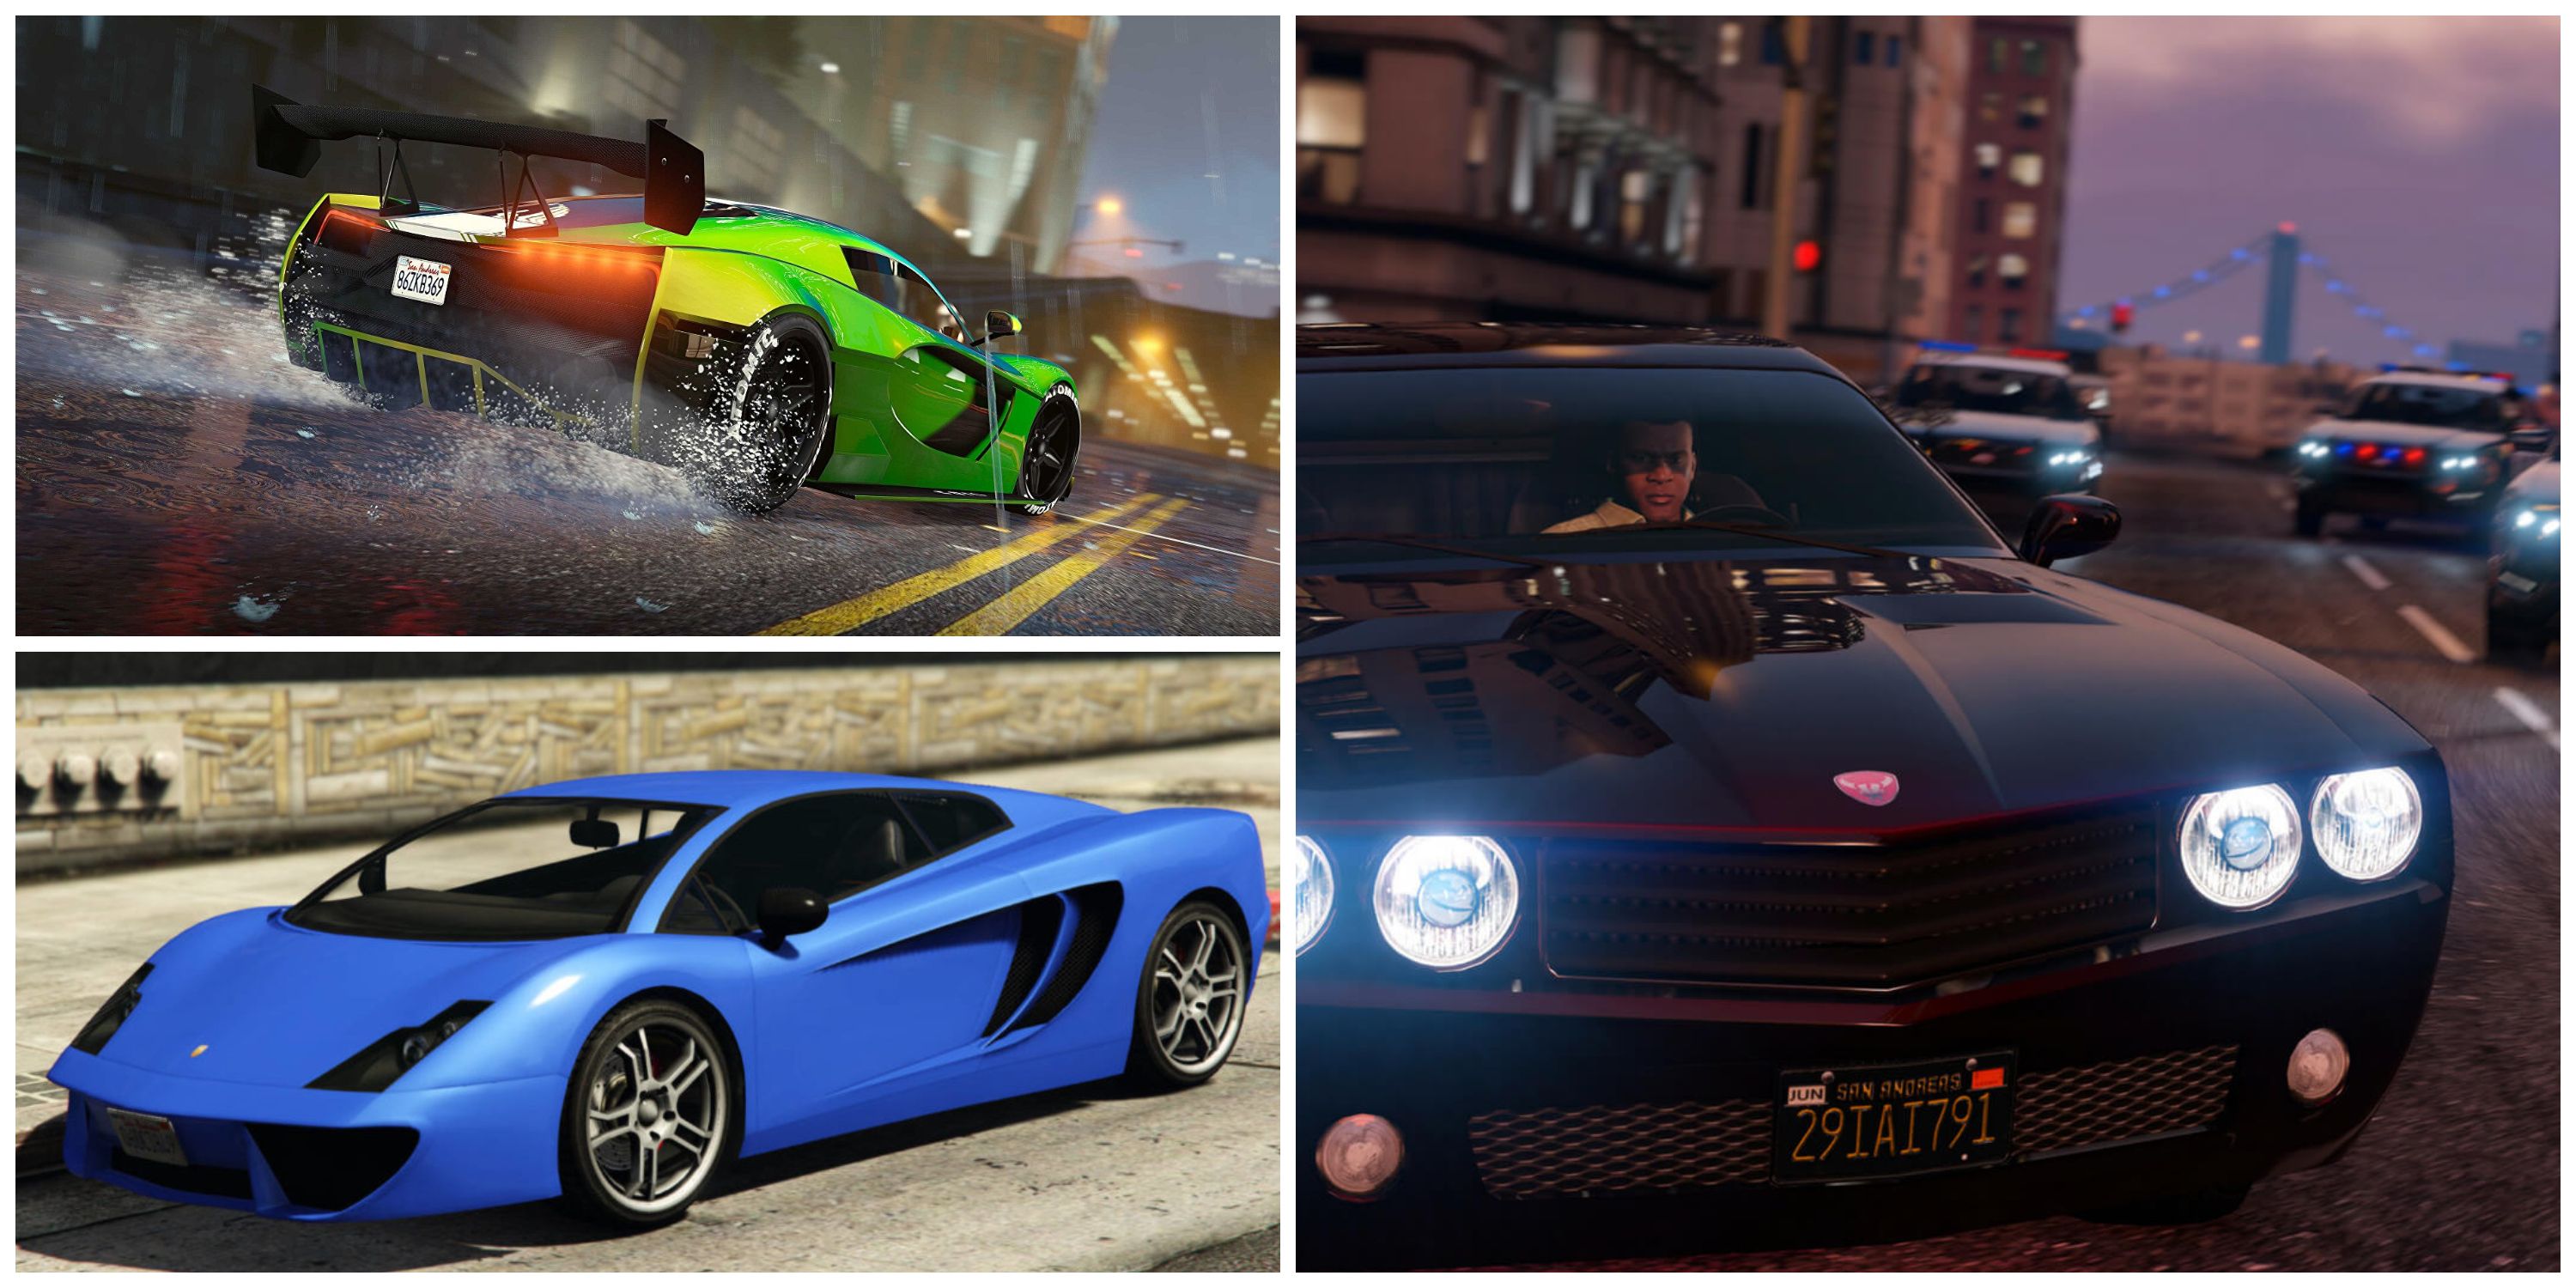 Best Cars in GTA Online: Los Santos Tuners as Seen by Players